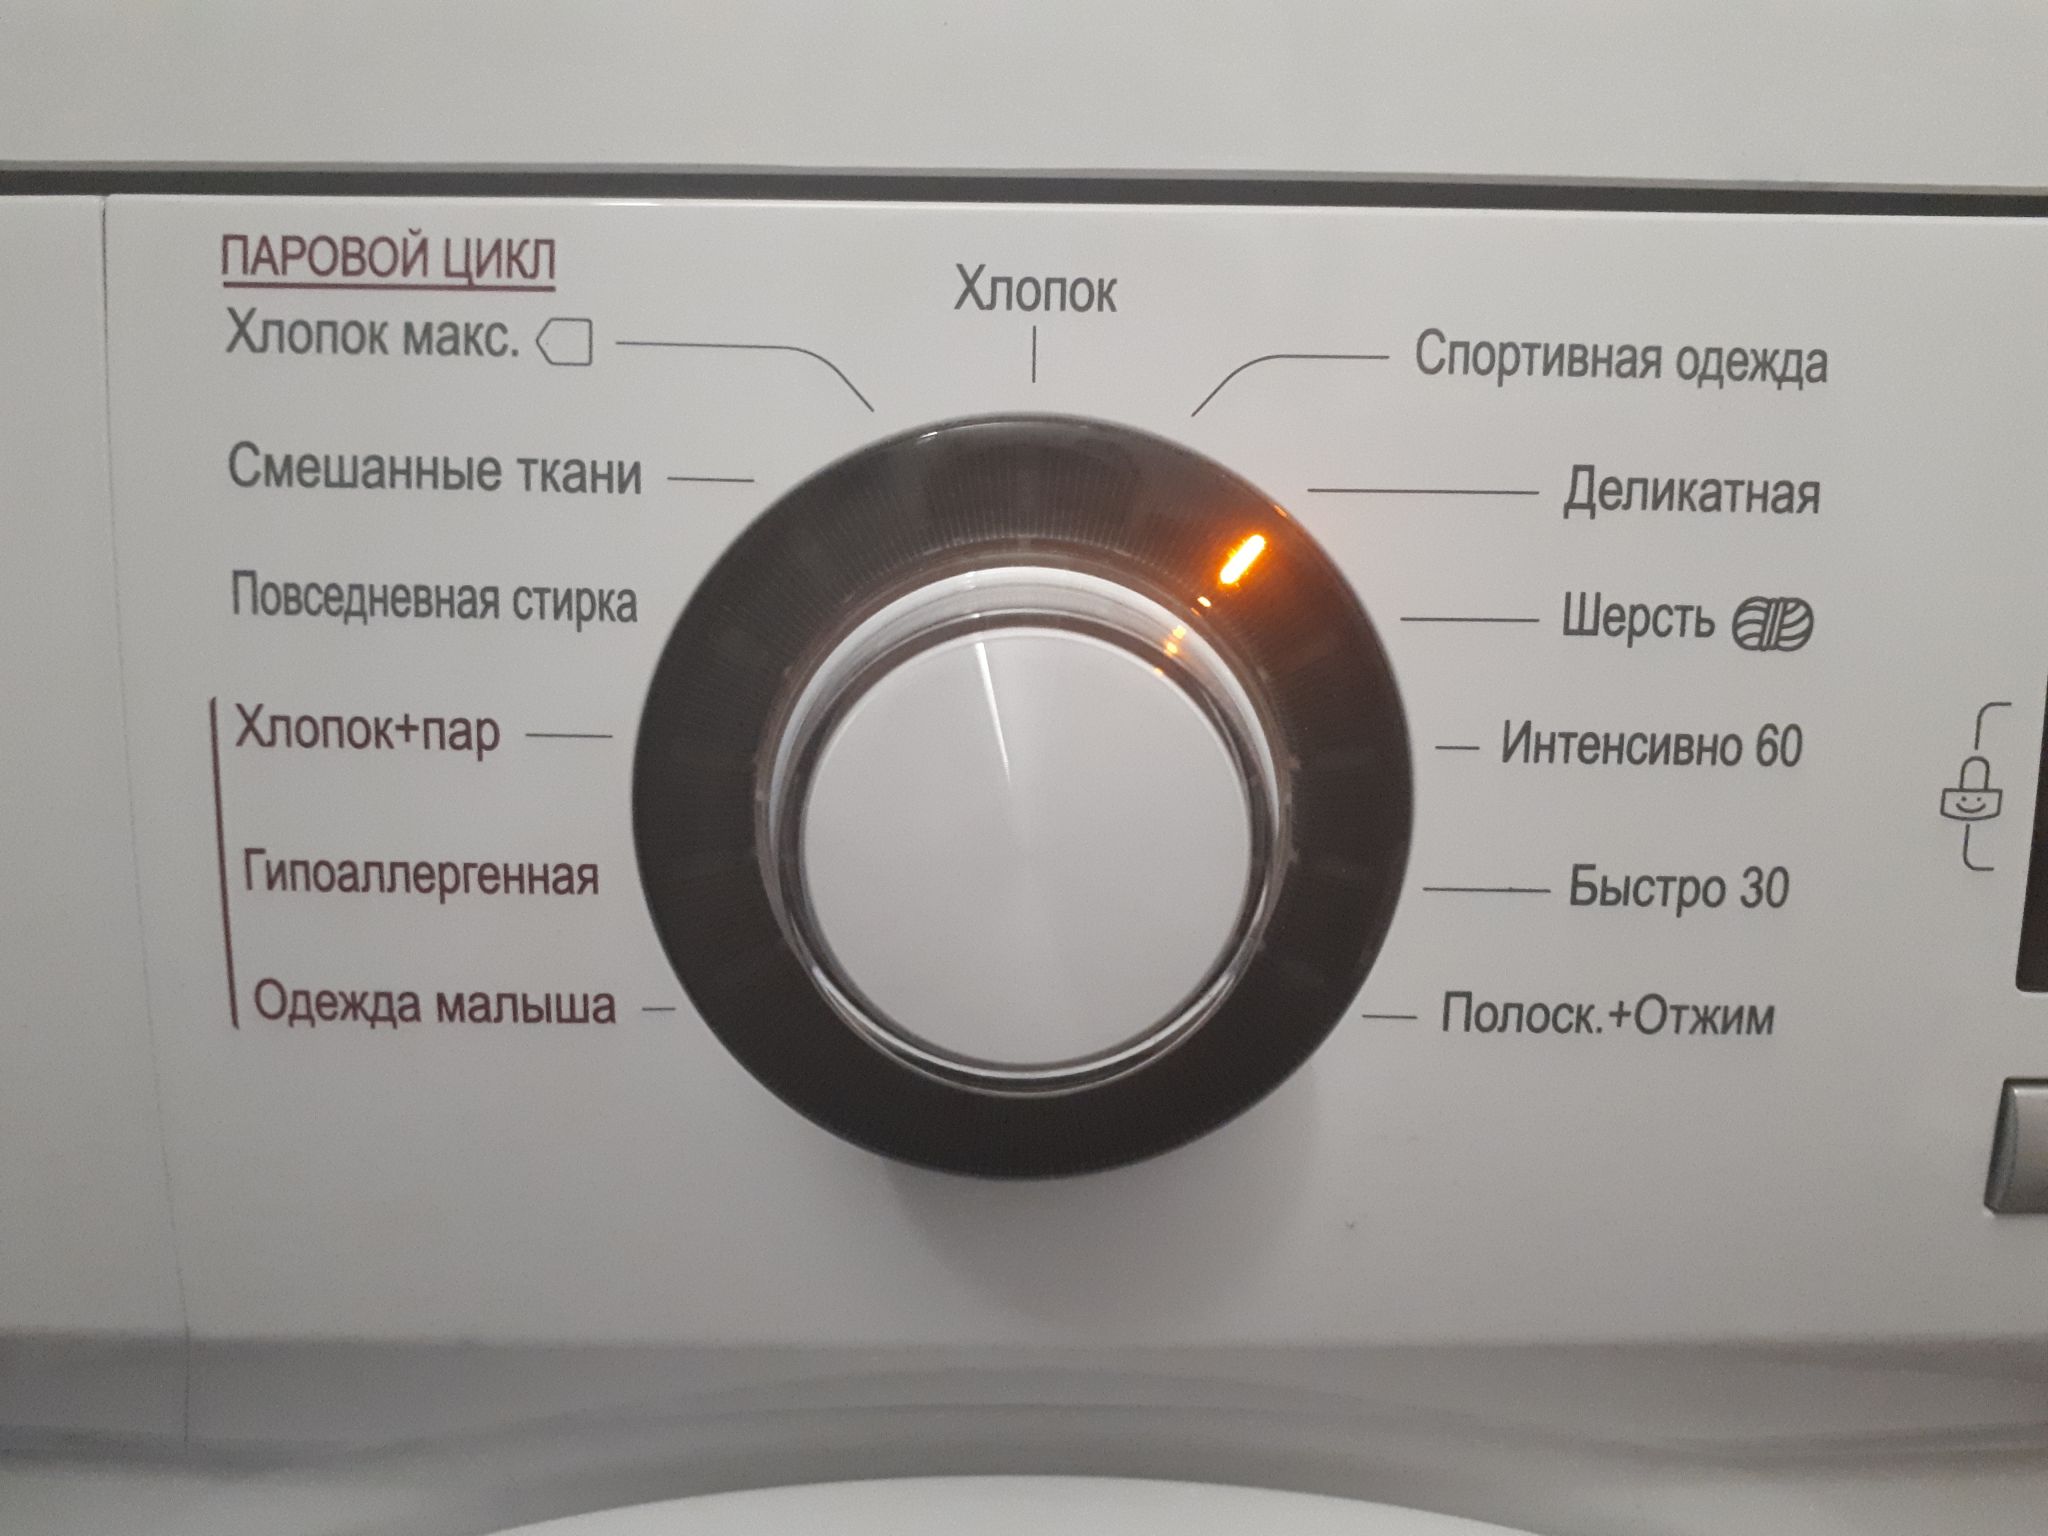 что такое steam в стиральной машине lg это функция фото 72